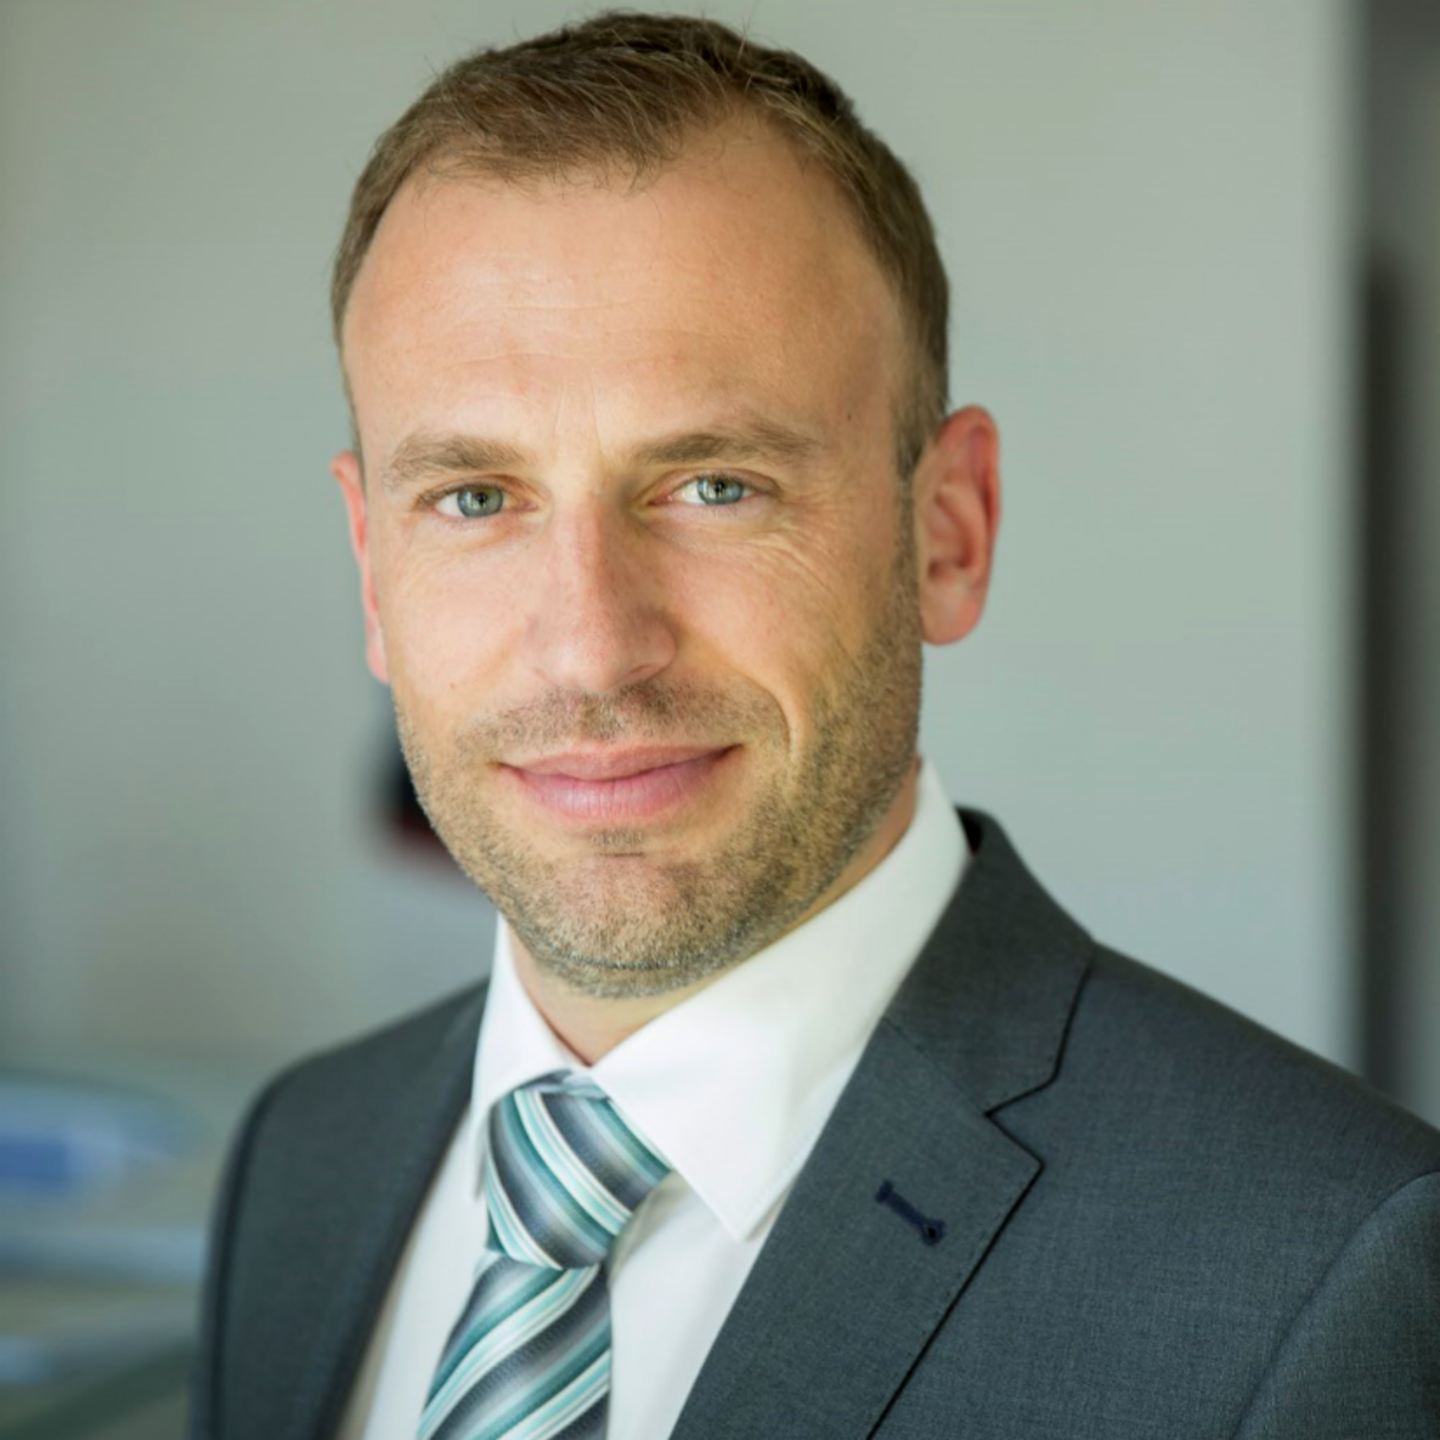 Besicherter Forderungskauf bei EOS: Bernhard Melischnig, Managing Director bei EOS Croatia